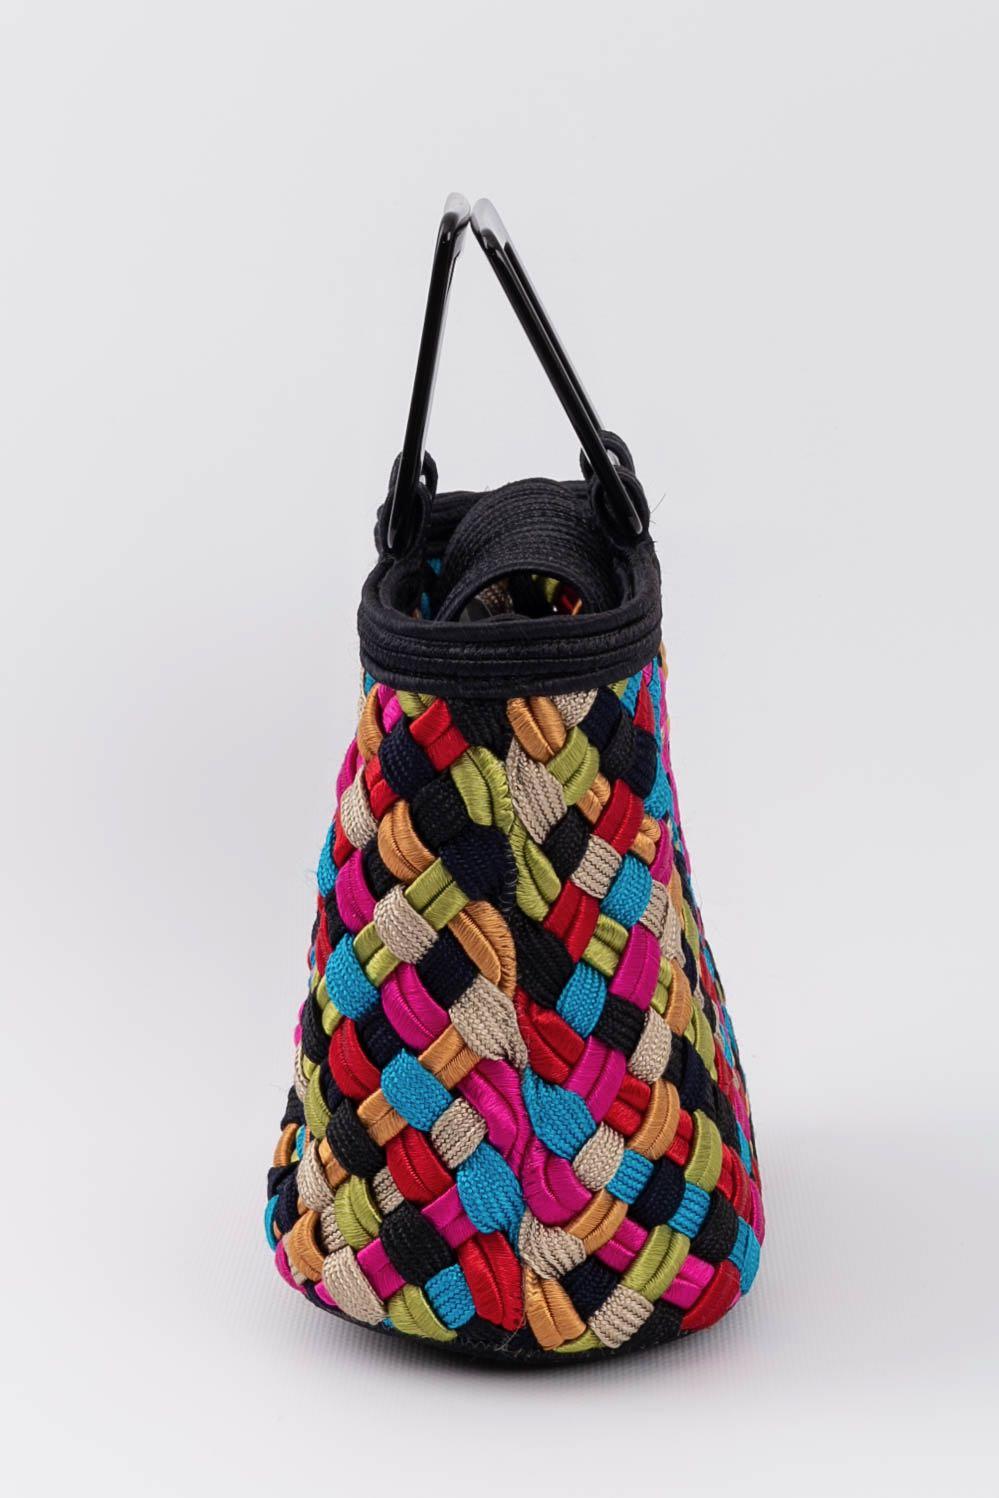 Yves Saint Laurent (Made in France) Mehrfarbige Handtasche mit schwarzem Bakelit-Griff.

Zusätzliche Informationen: 
Abmessungen: Höhe: 15 cm (5.91 in), Breite: 24 cm (9.45 in), Tiefe: 10 cm (3.94 in), Henkel: 23 cm (9.05 in)
Zustand: Sehr guter